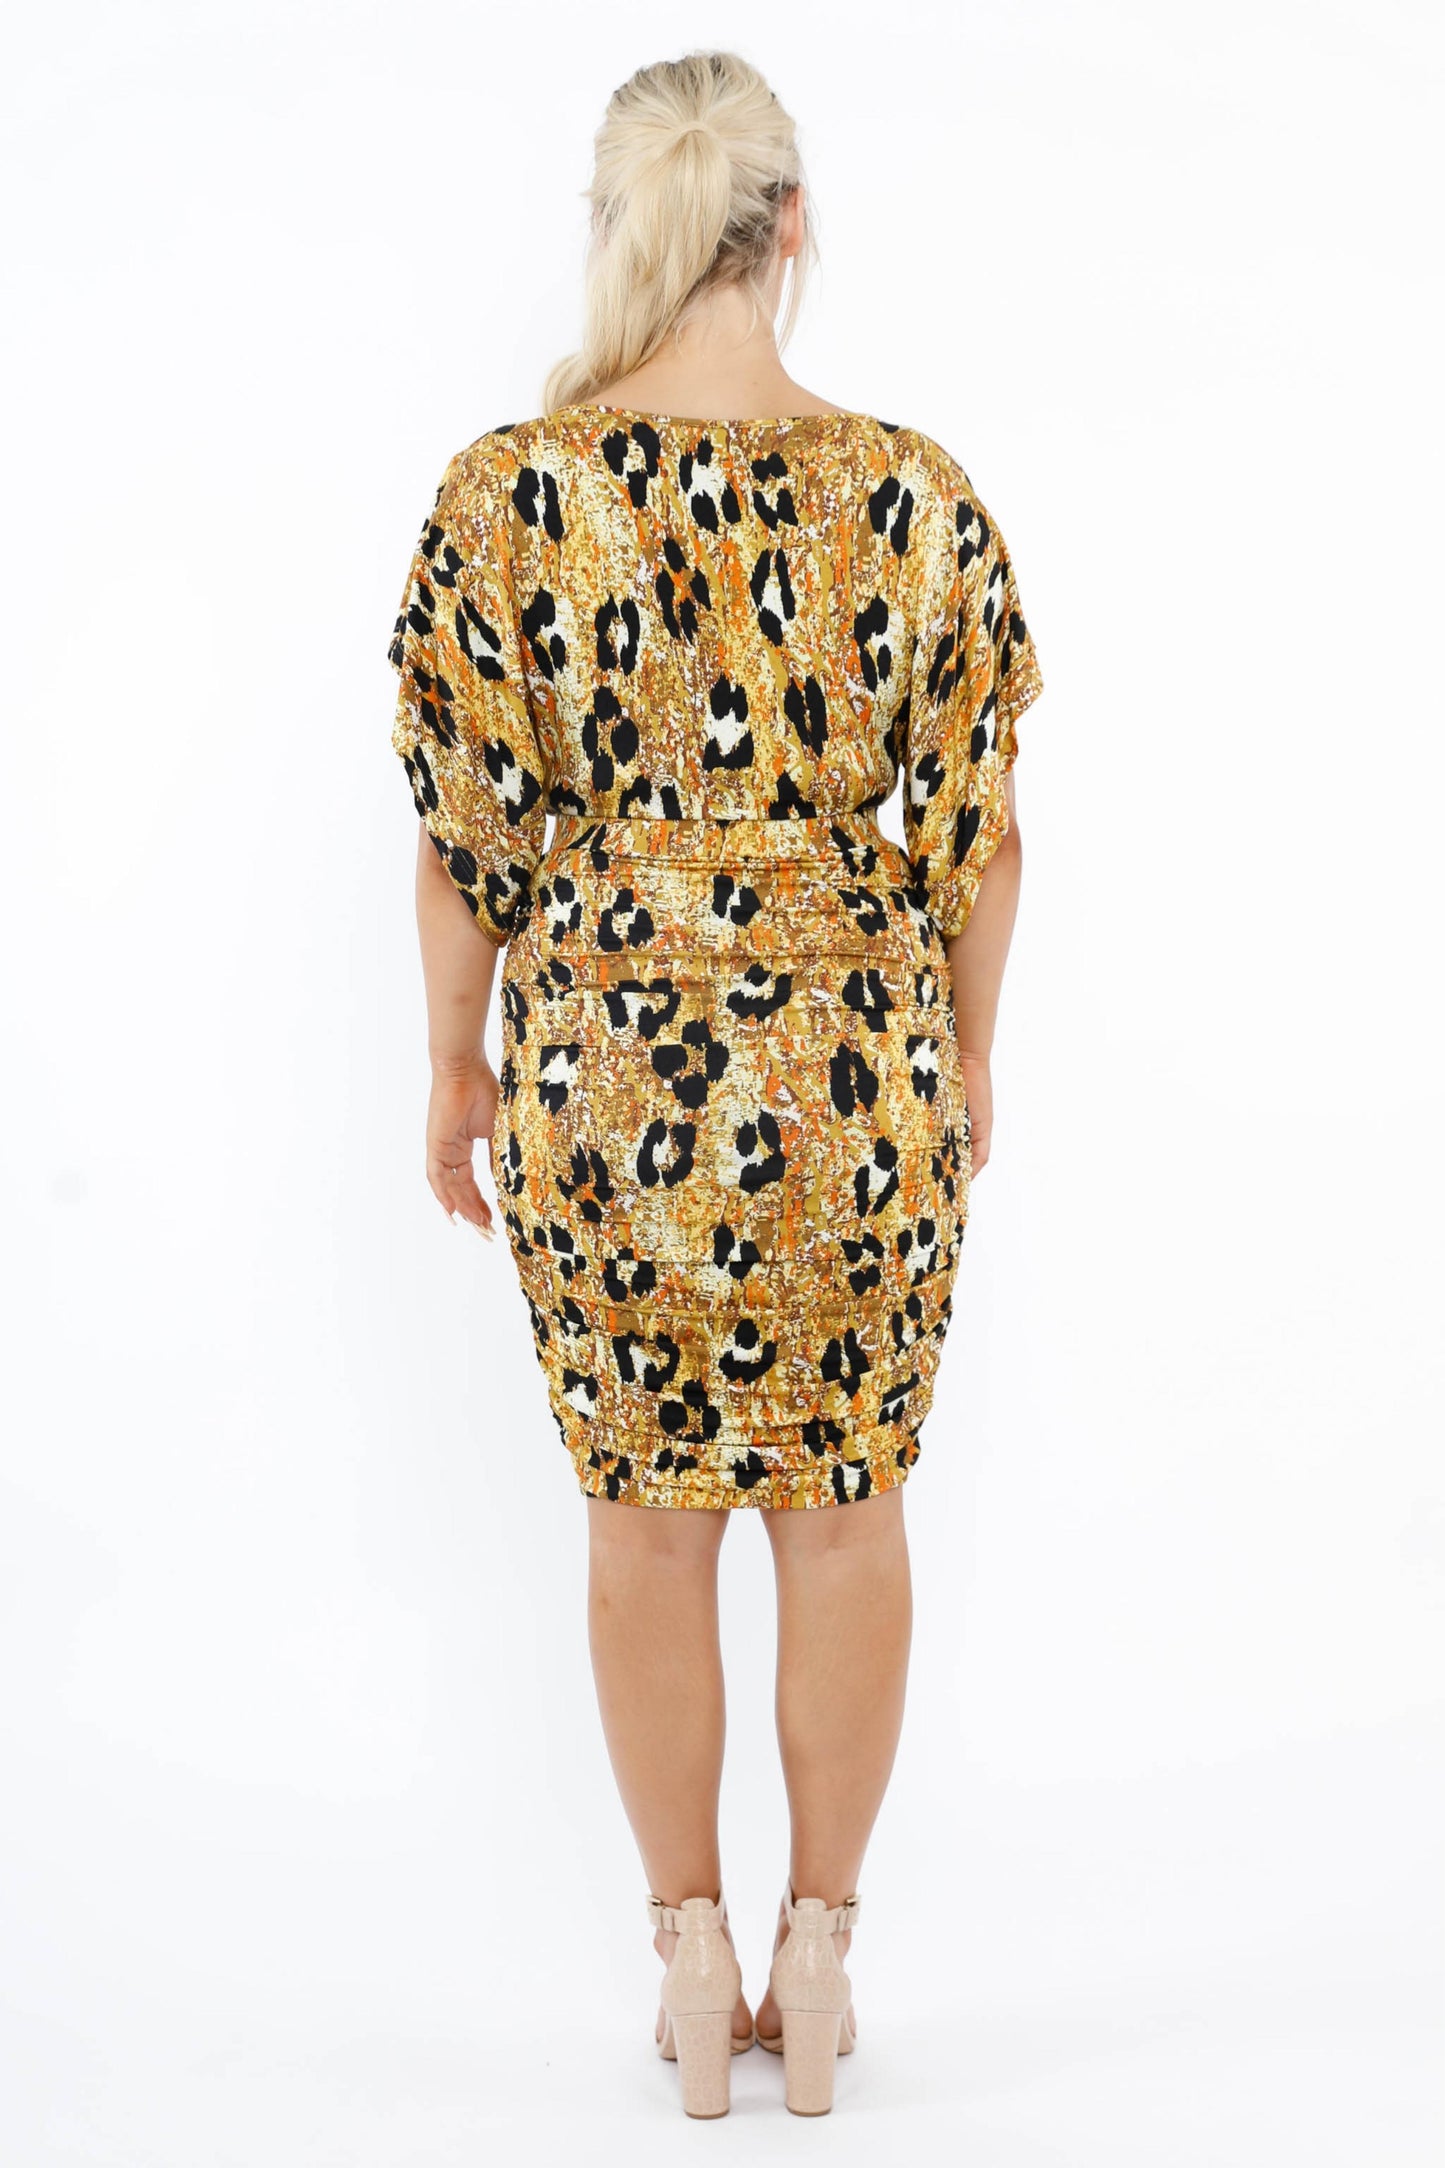 FINAL SALE Billow Dress in Enchanted Leopard